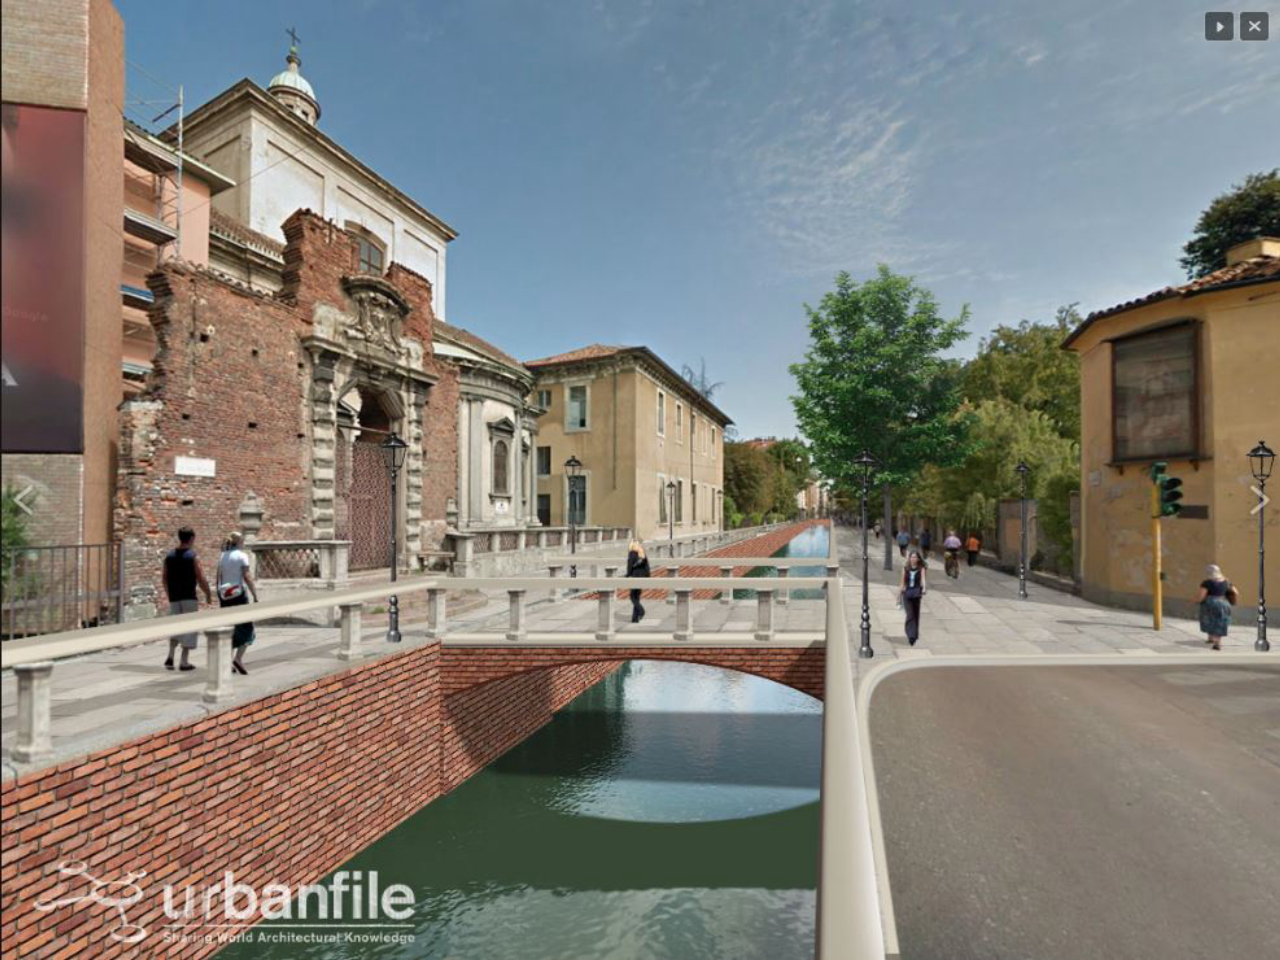 Projeção feita pelo site Urbanfile mostra como poderia ficar a Via Francesco Sforza depois da reabertura dos canais. Imagem: Urbanfile/Divulgação